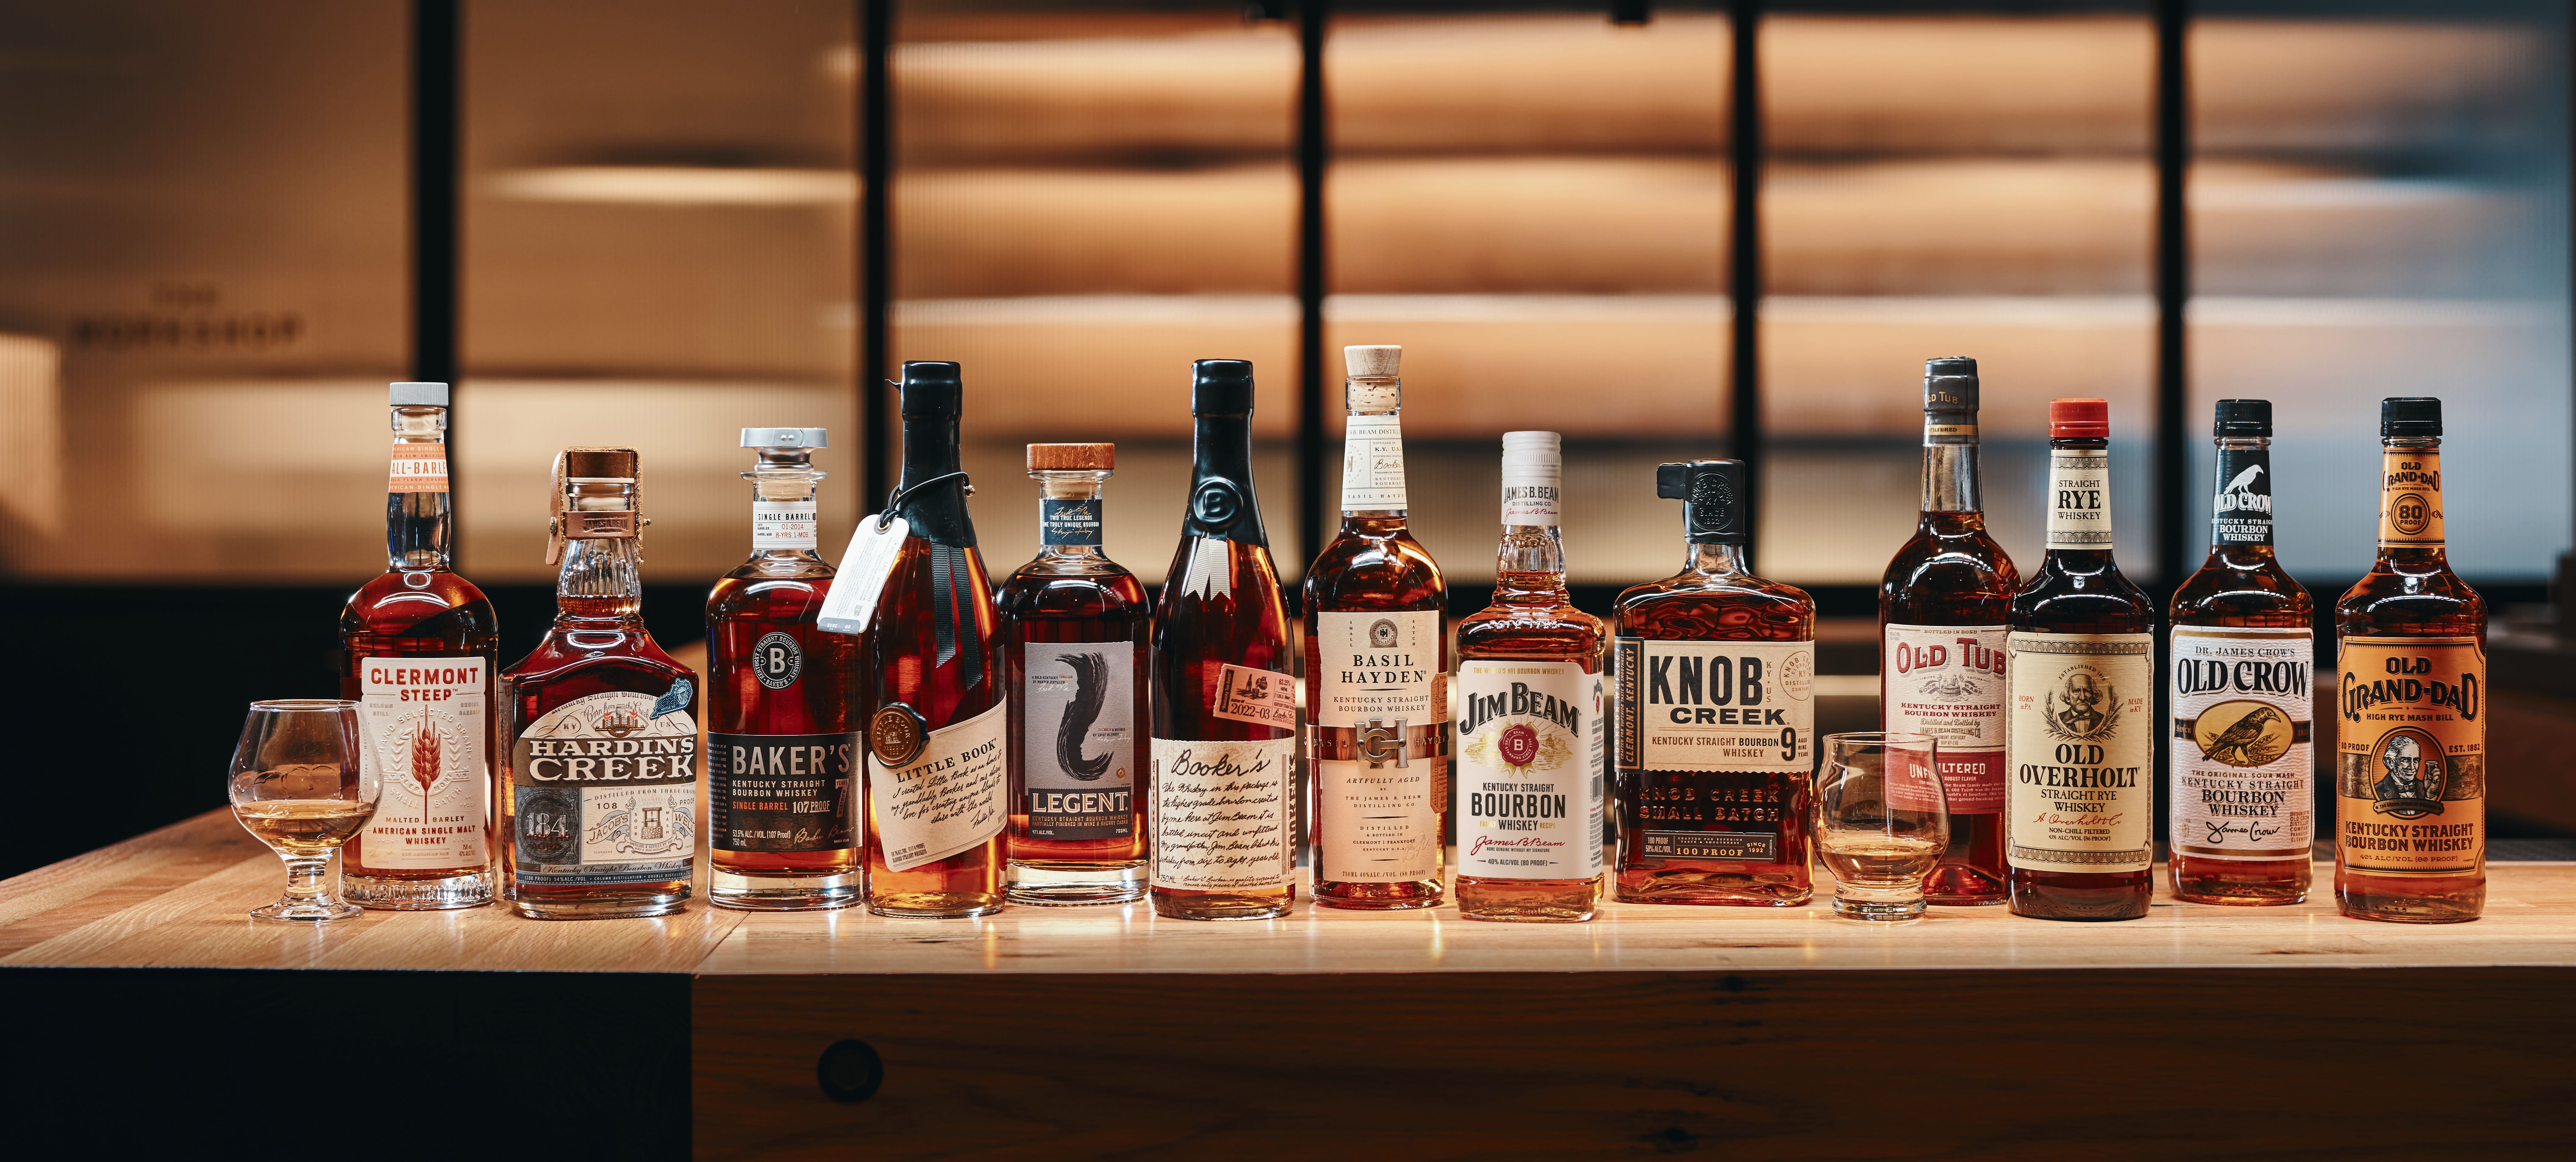 Beam Bourbon Brands - American Whiskeys Brands